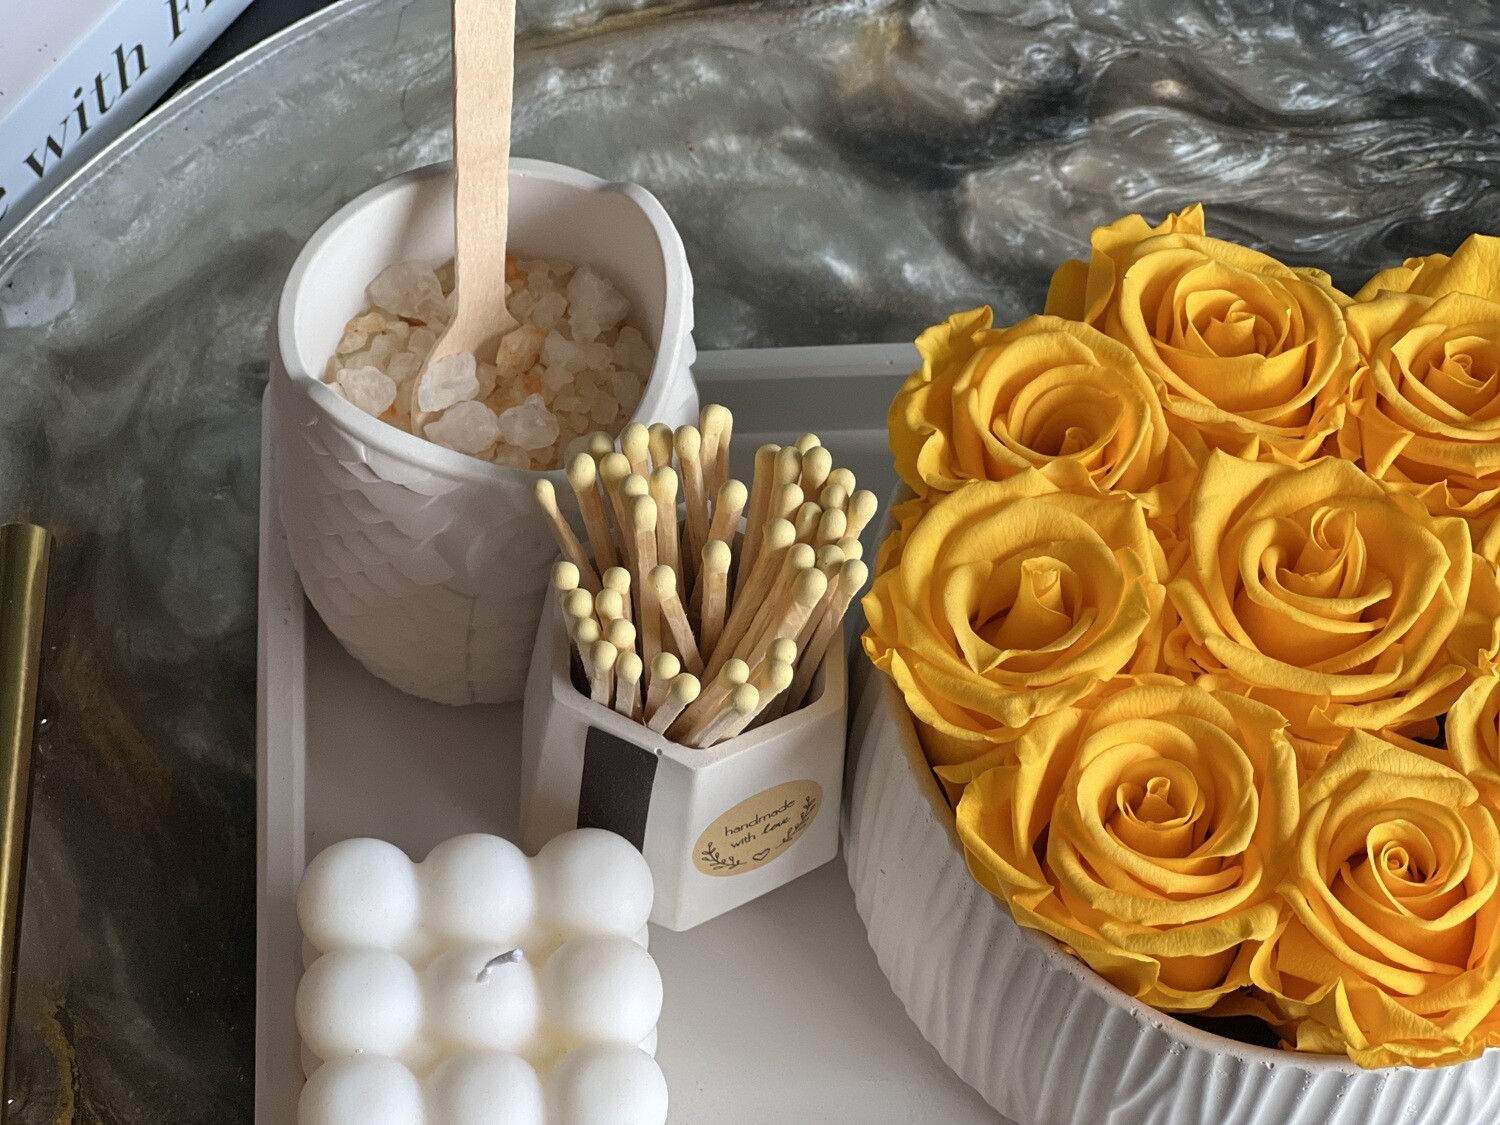 Golden Splash - gift set with forever roses